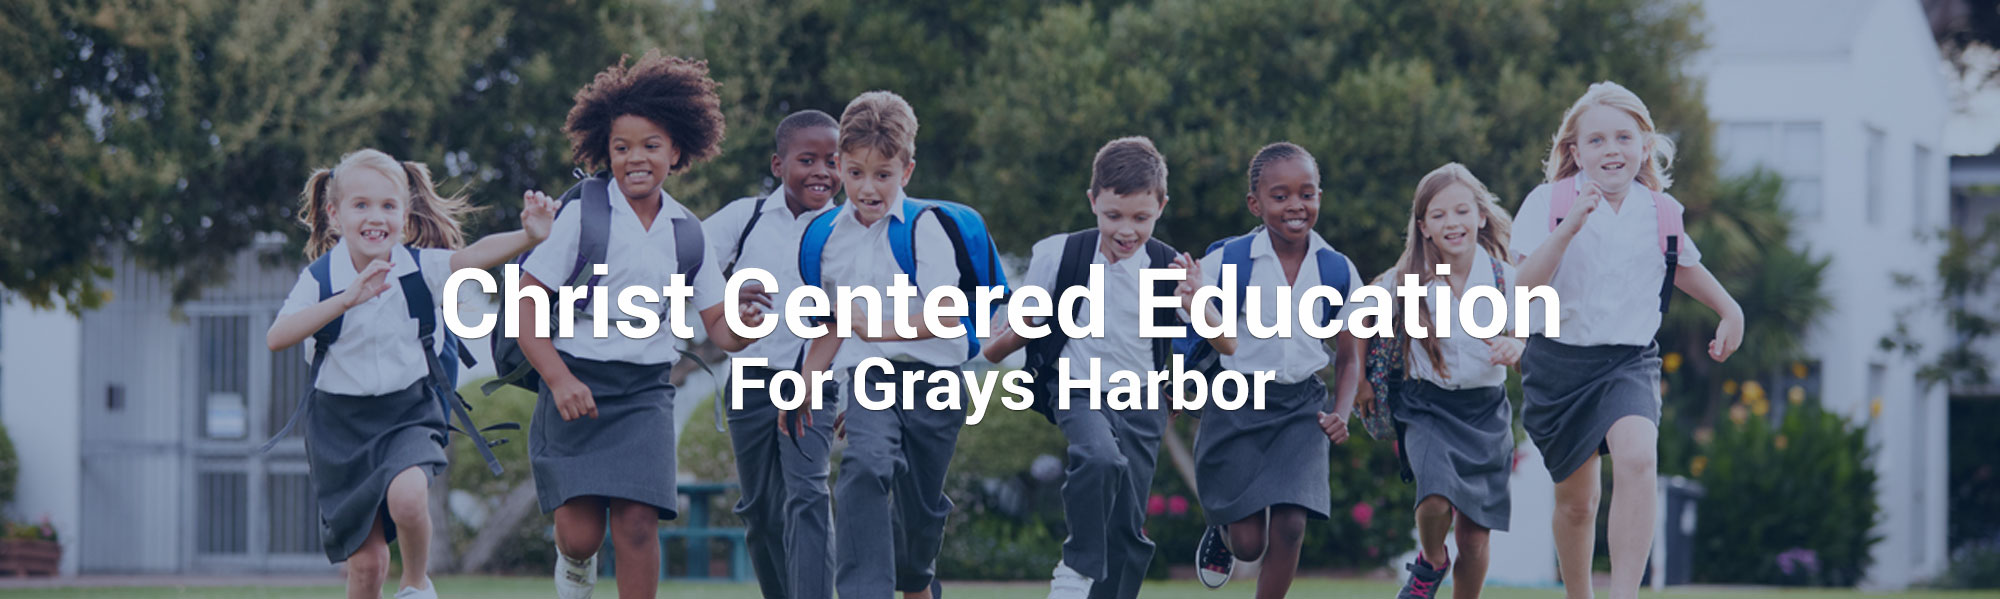 Christ-Centered-Education-for-Grays-Harbor.jpg